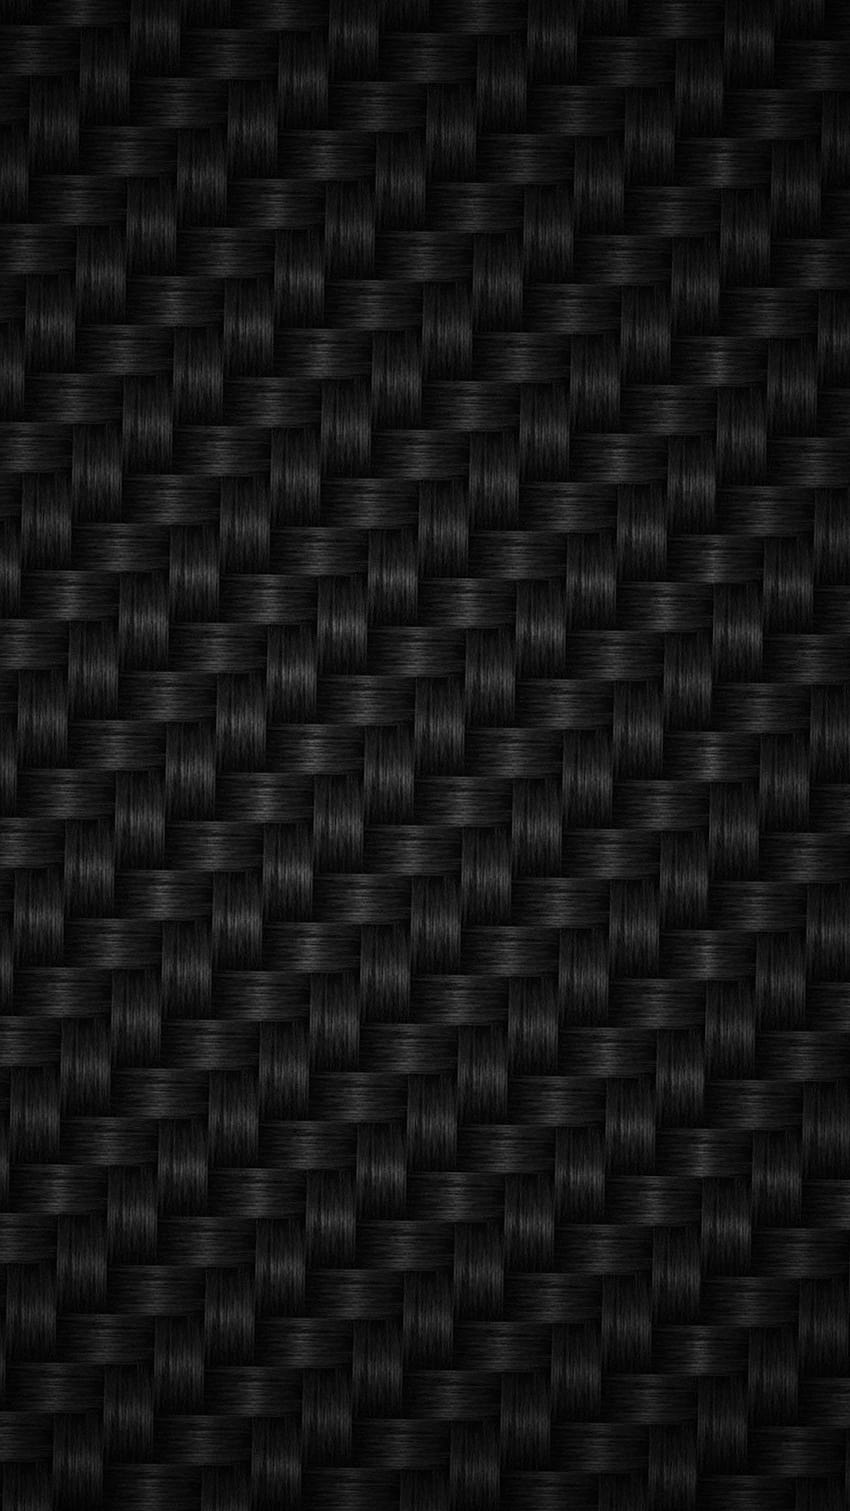 Carbon fiber htc one, vertu HD phone wallpaper